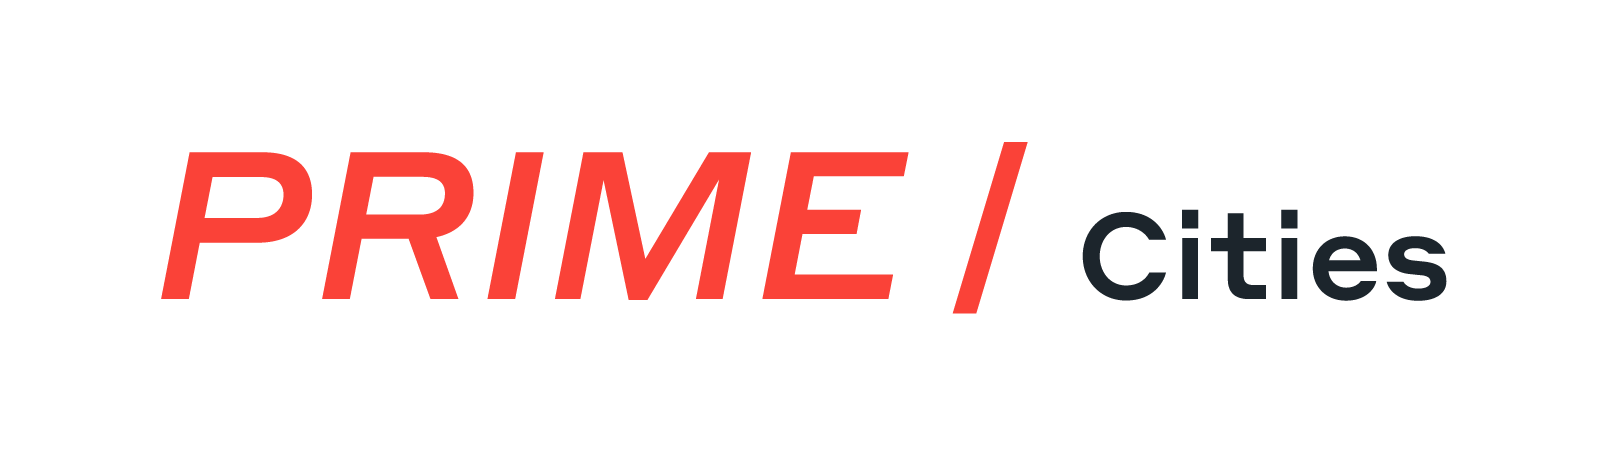 Prime/Cities Logo